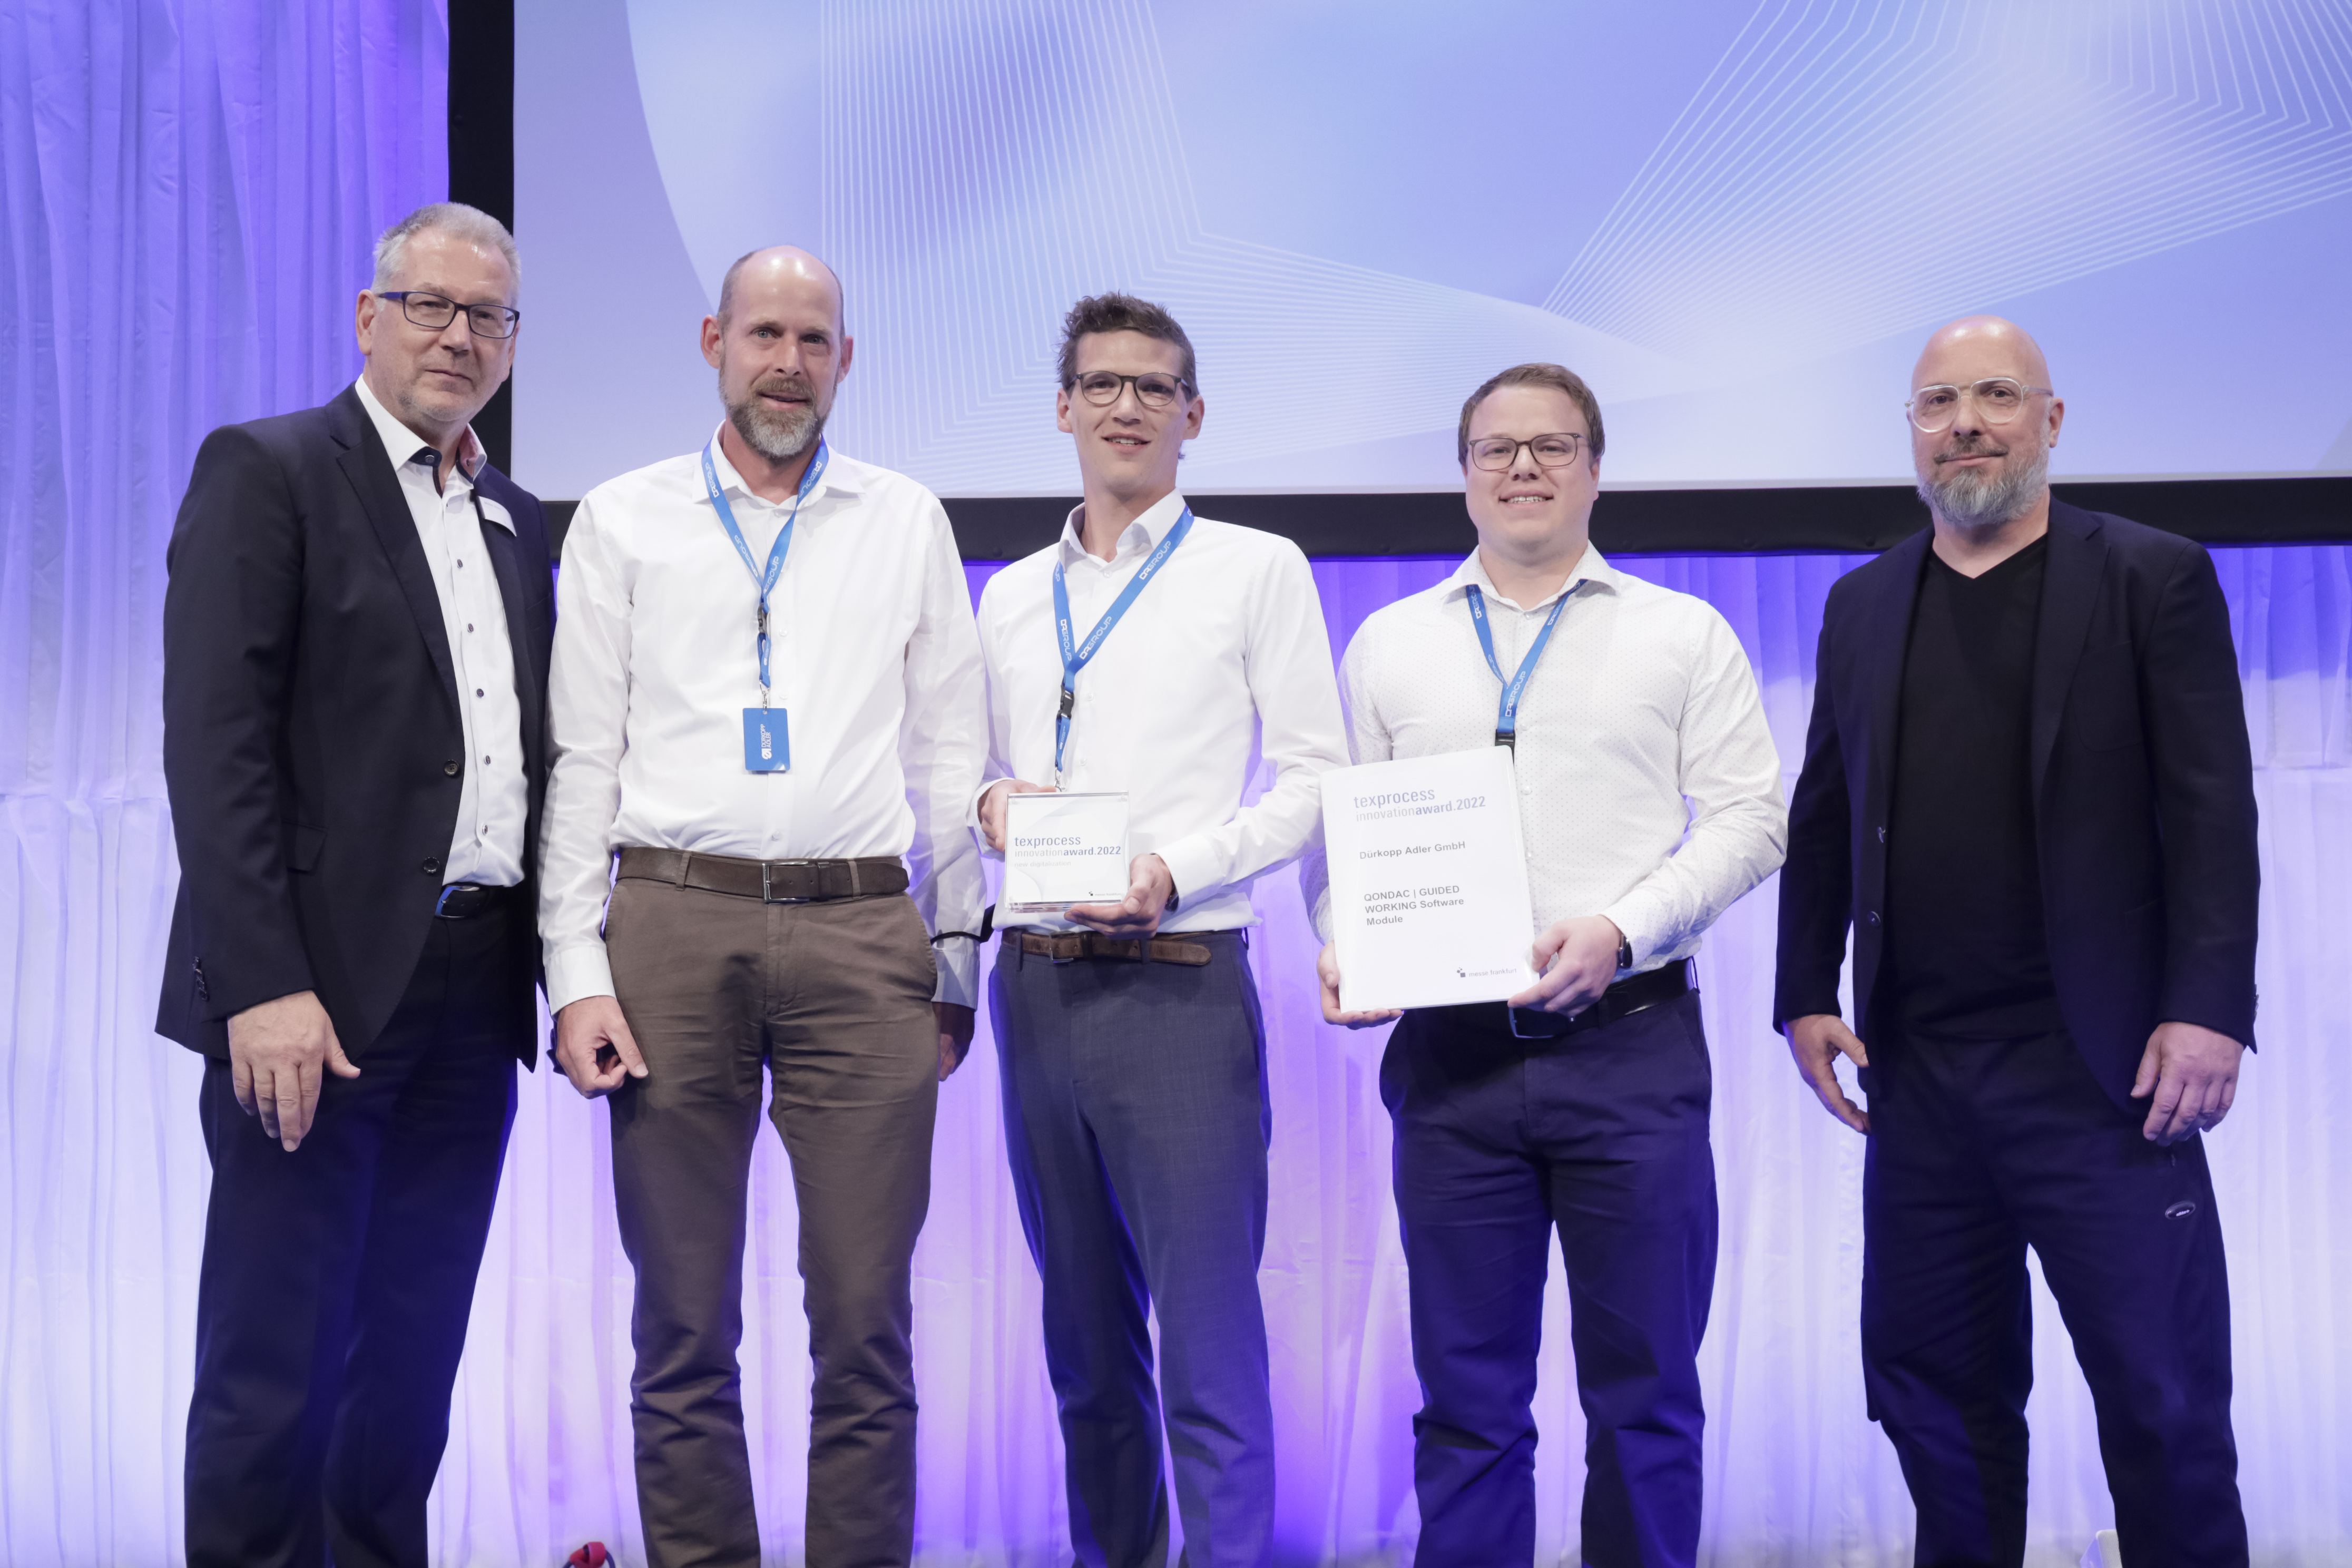 Techtextil + Texprocess Innovation Award 2022 / Dürkopp Adler GmbH